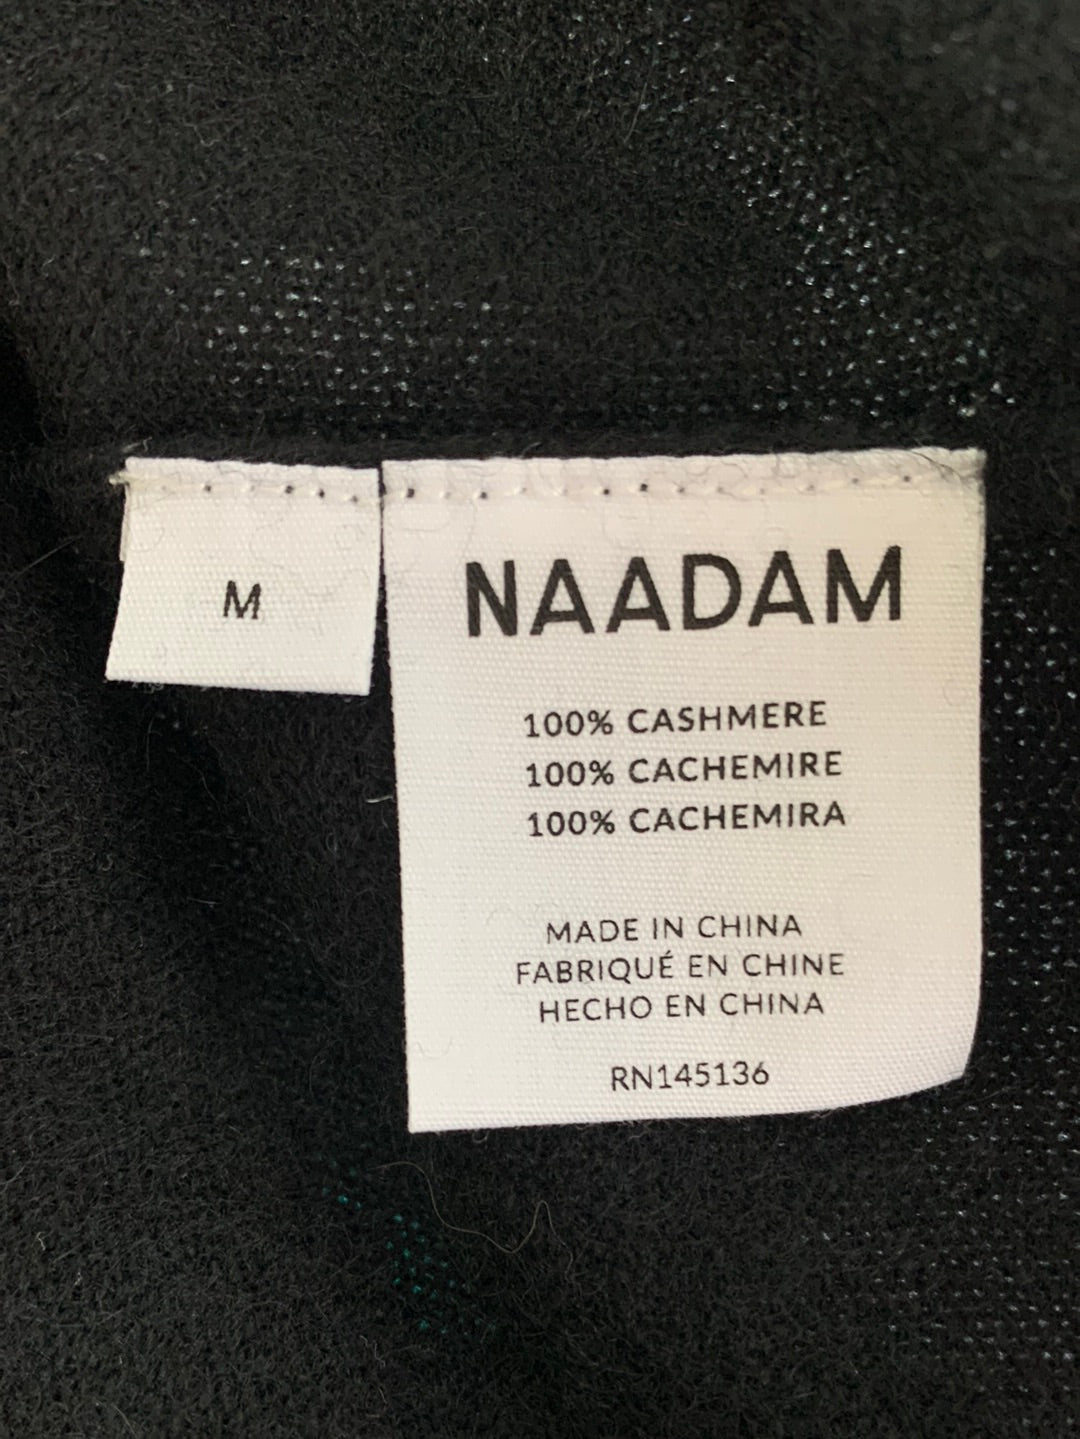 NWT - NAADAM black The Original Cashmere Sweater - M